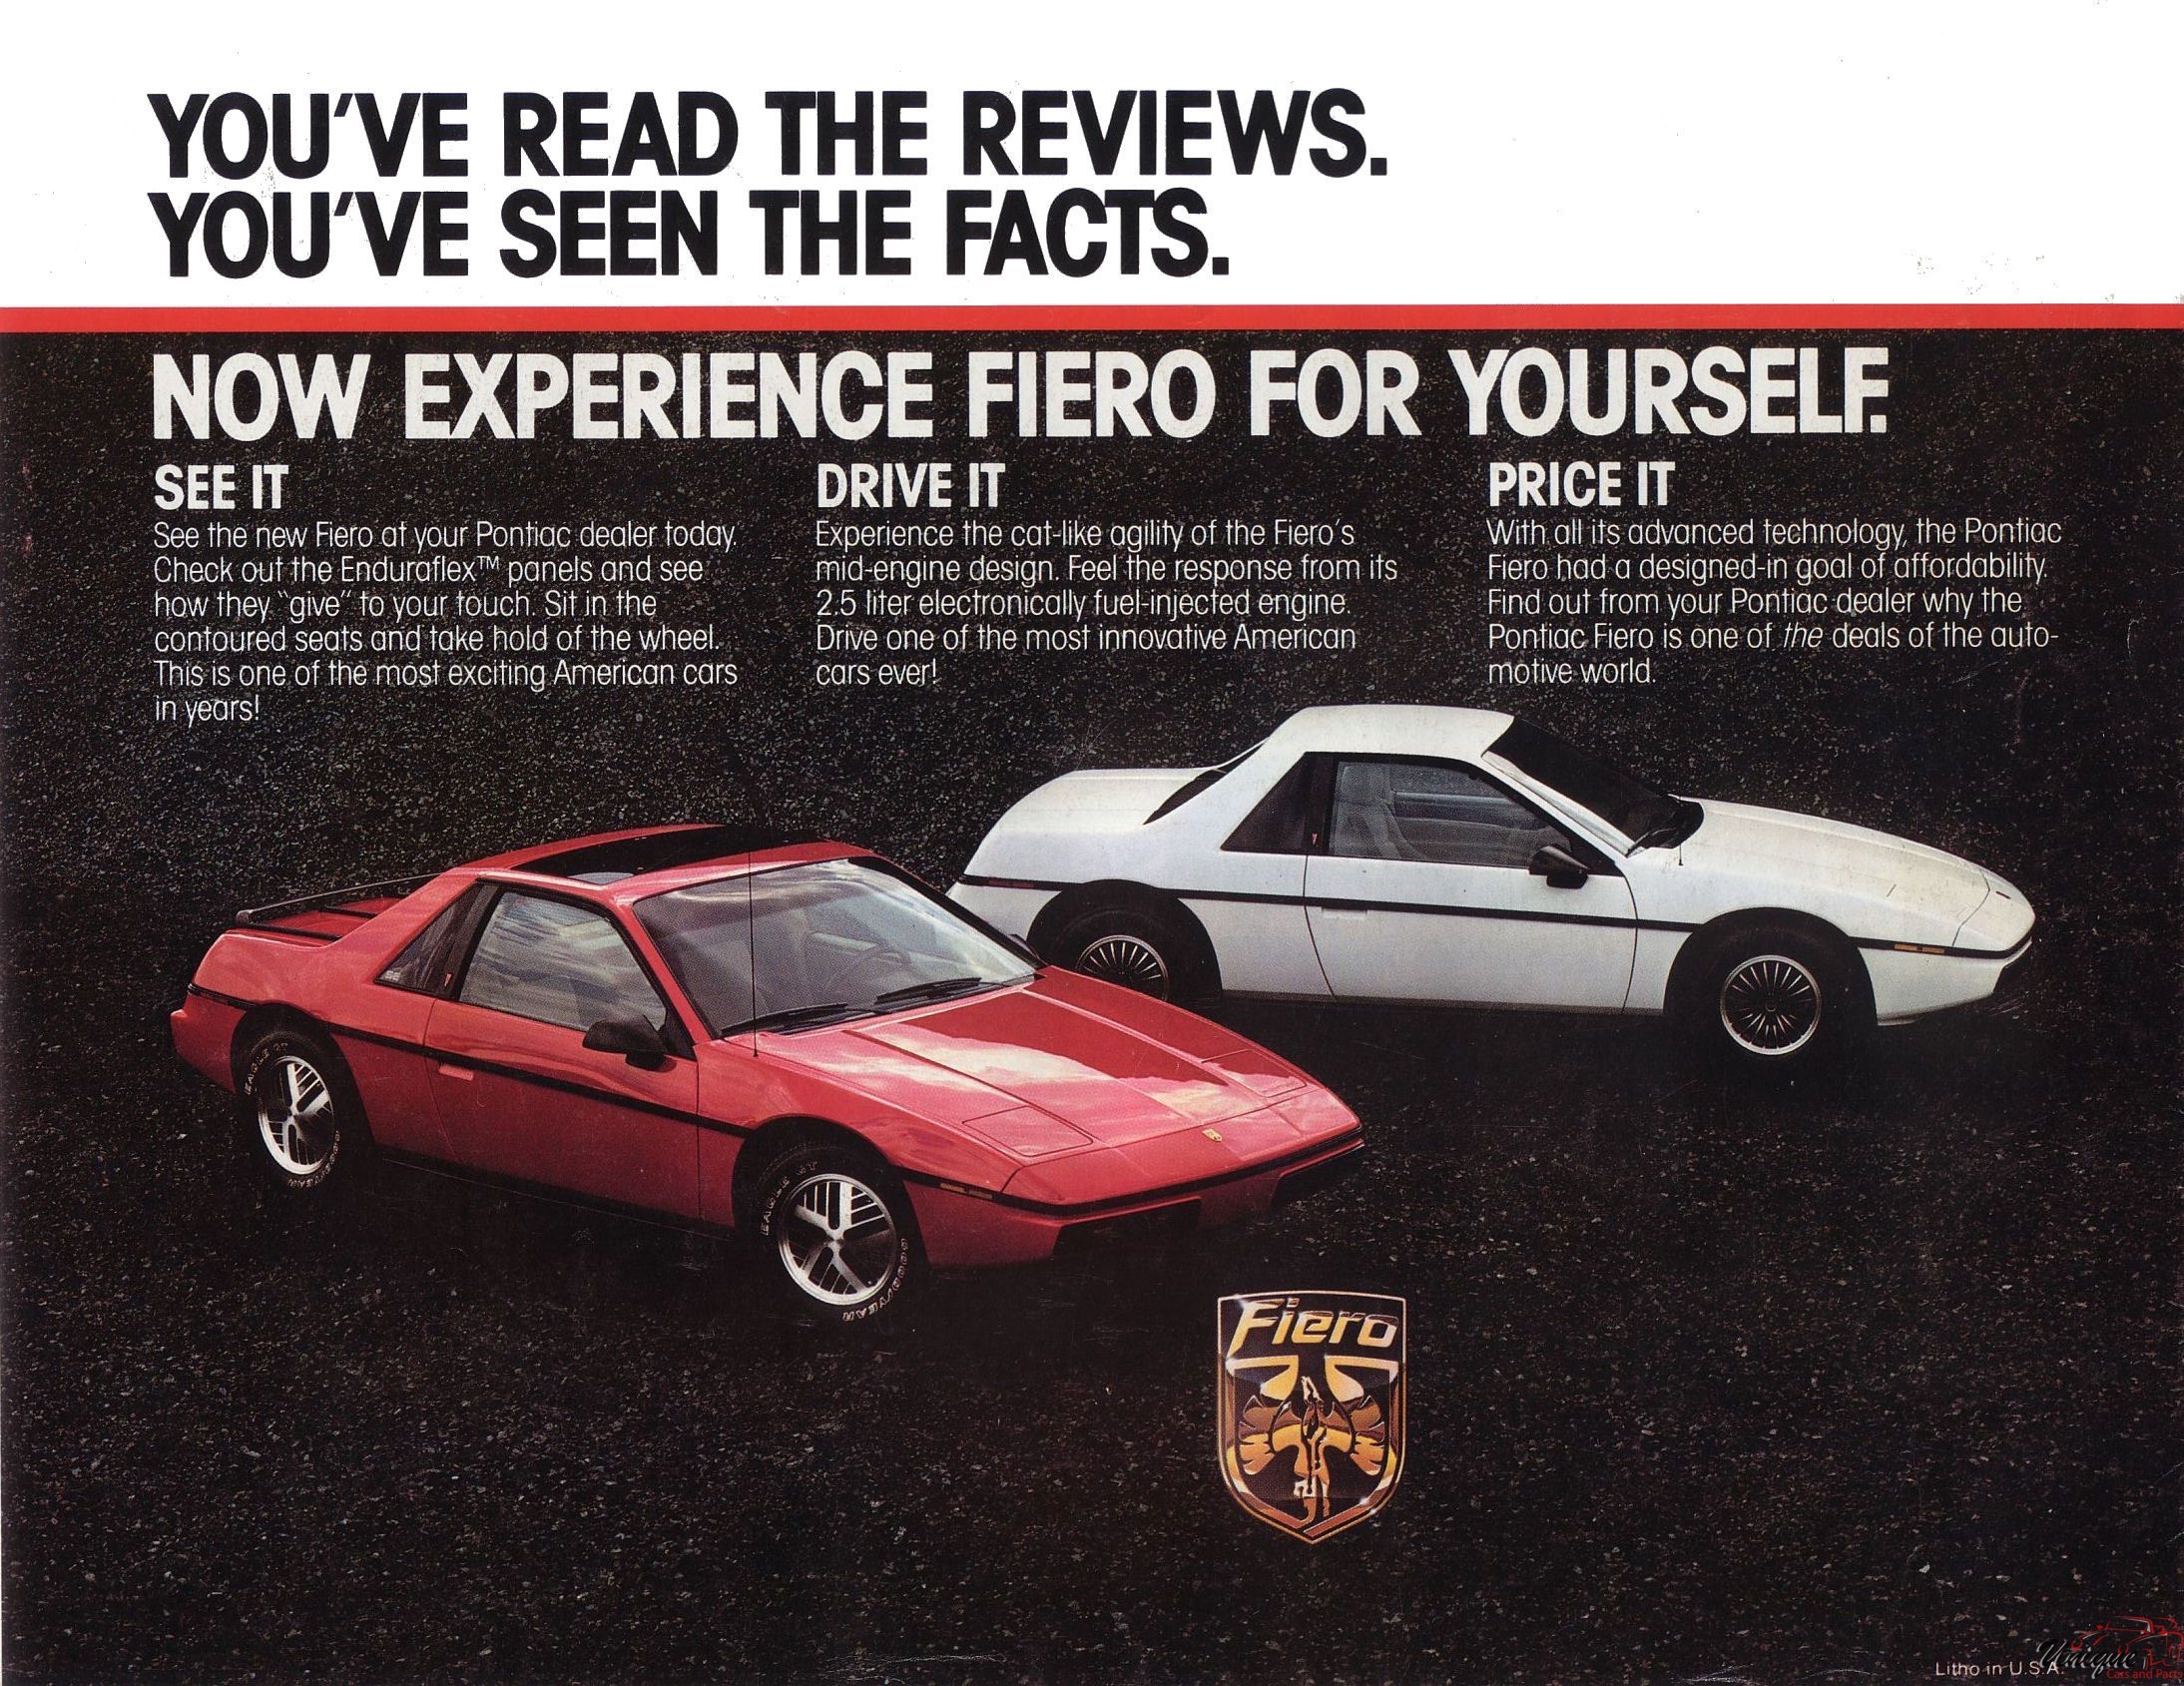 1983 Pontiac Fiero Foldout Page 2